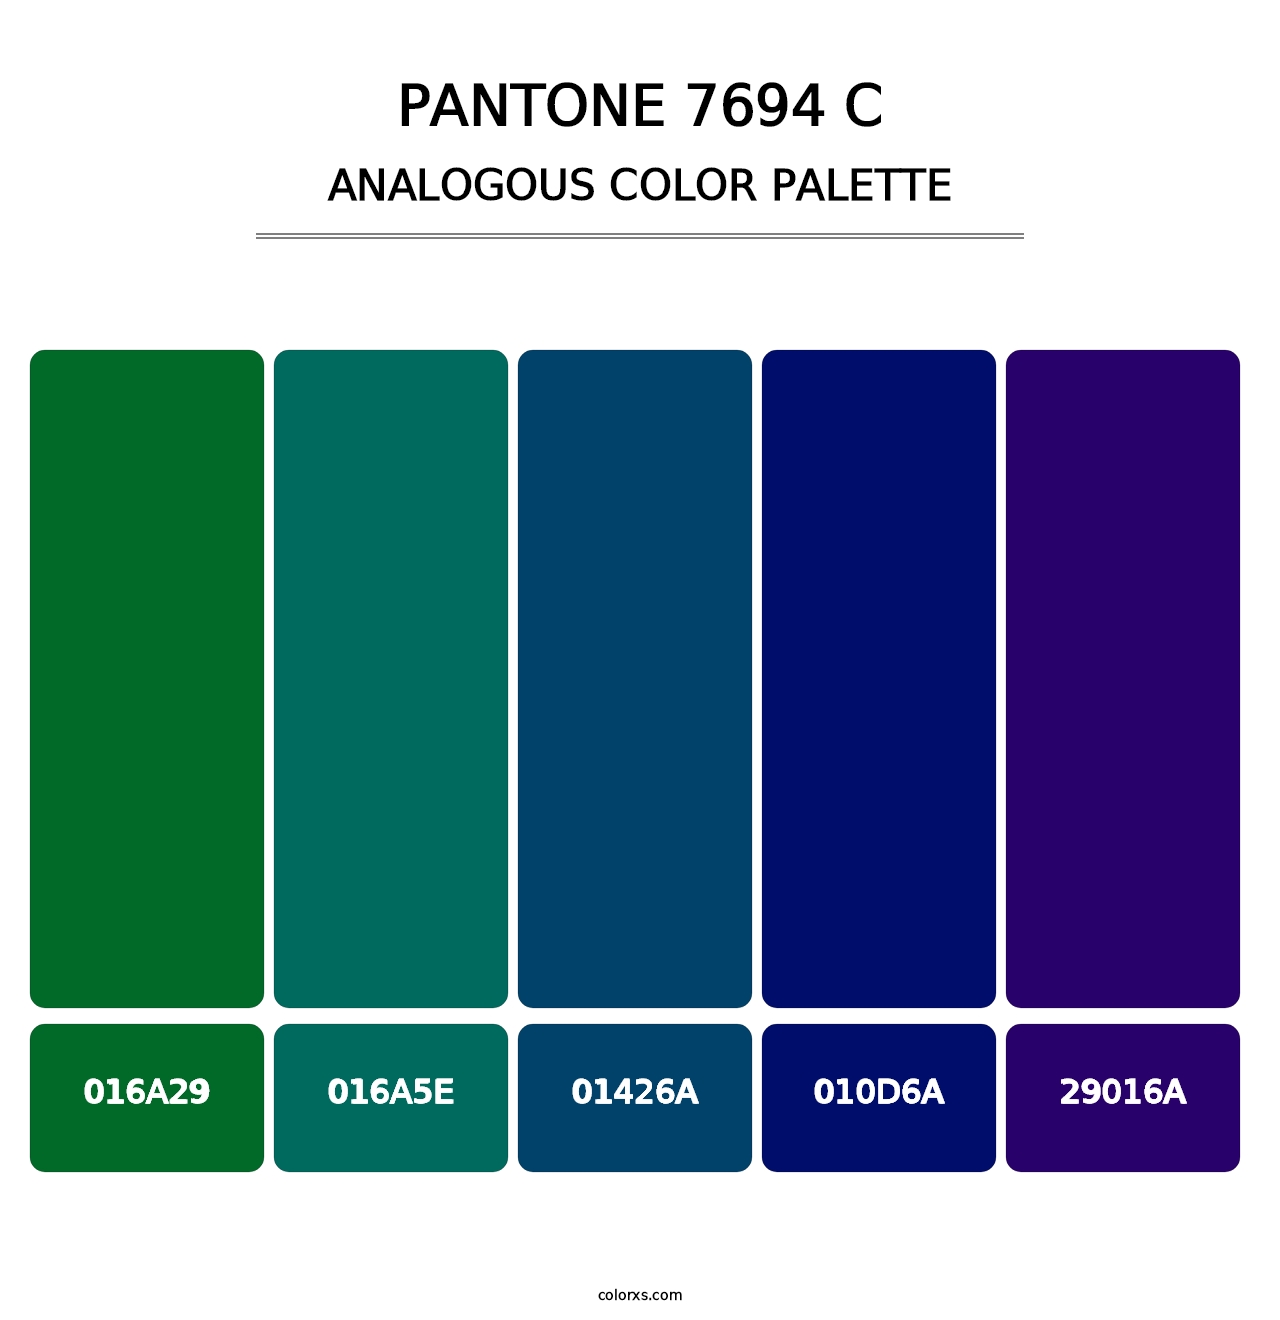 PANTONE 7694 C - Analogous Color Palette